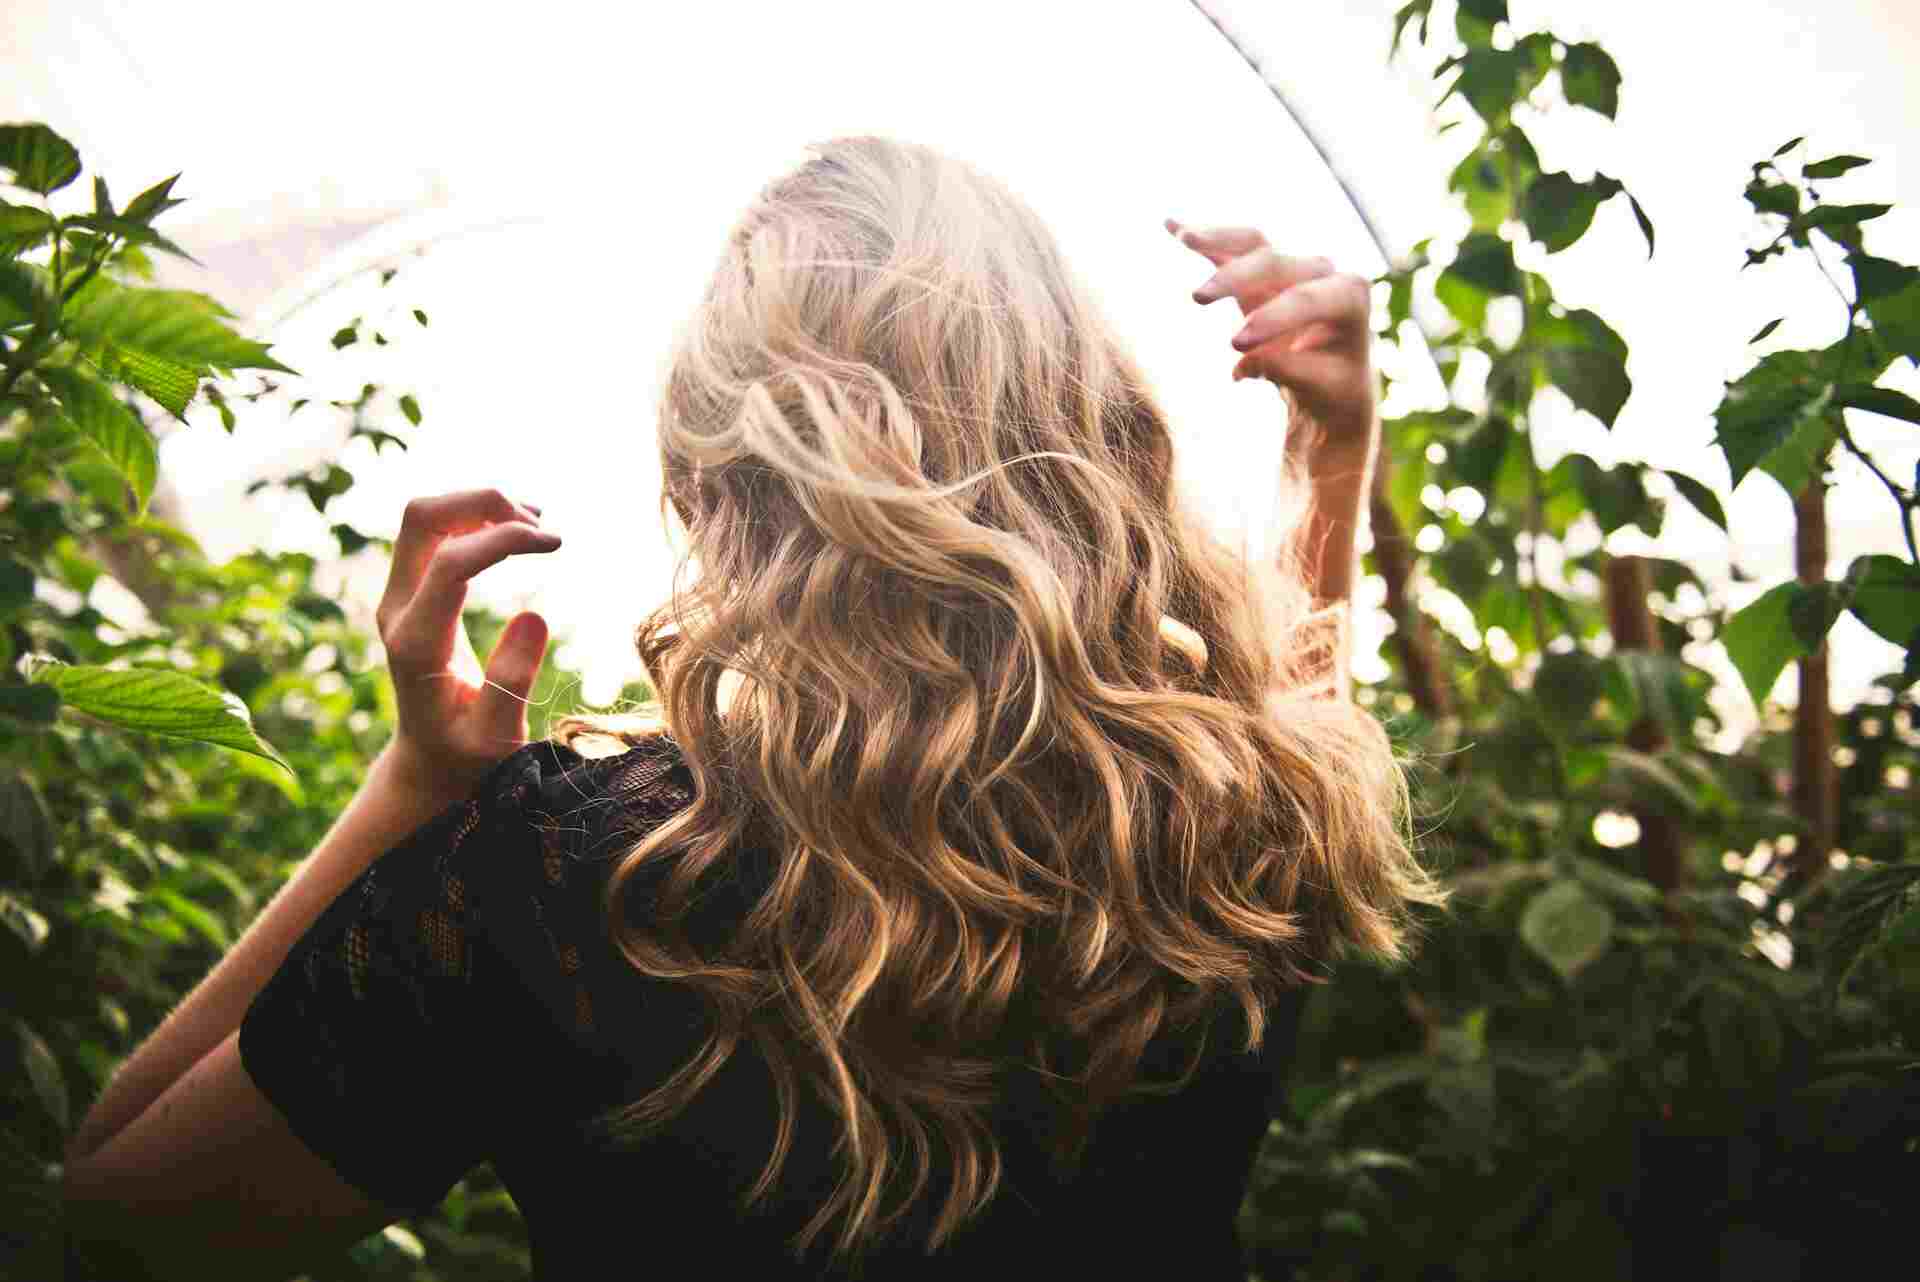 Frontiers: Длина волос женщин влияет на их сексуальную жизнь